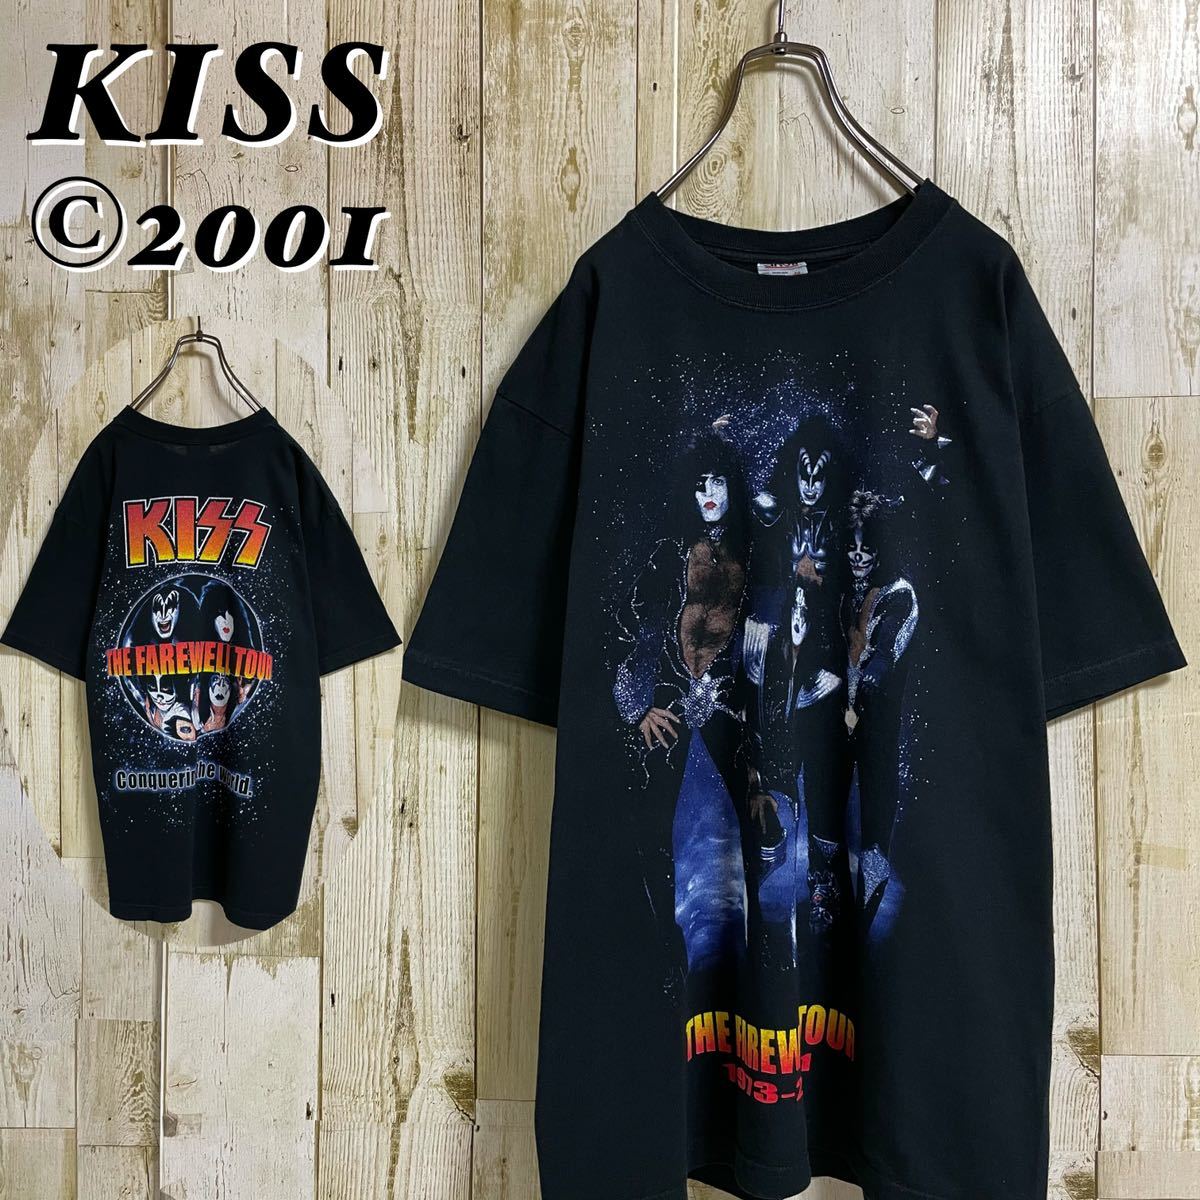 【アンビル】KISS キッス 両面プリント コピーライト 2001 正規品 ヘヴィメタル バンドTシャツ メタルTee Lサイズ相当 ブラック 古着